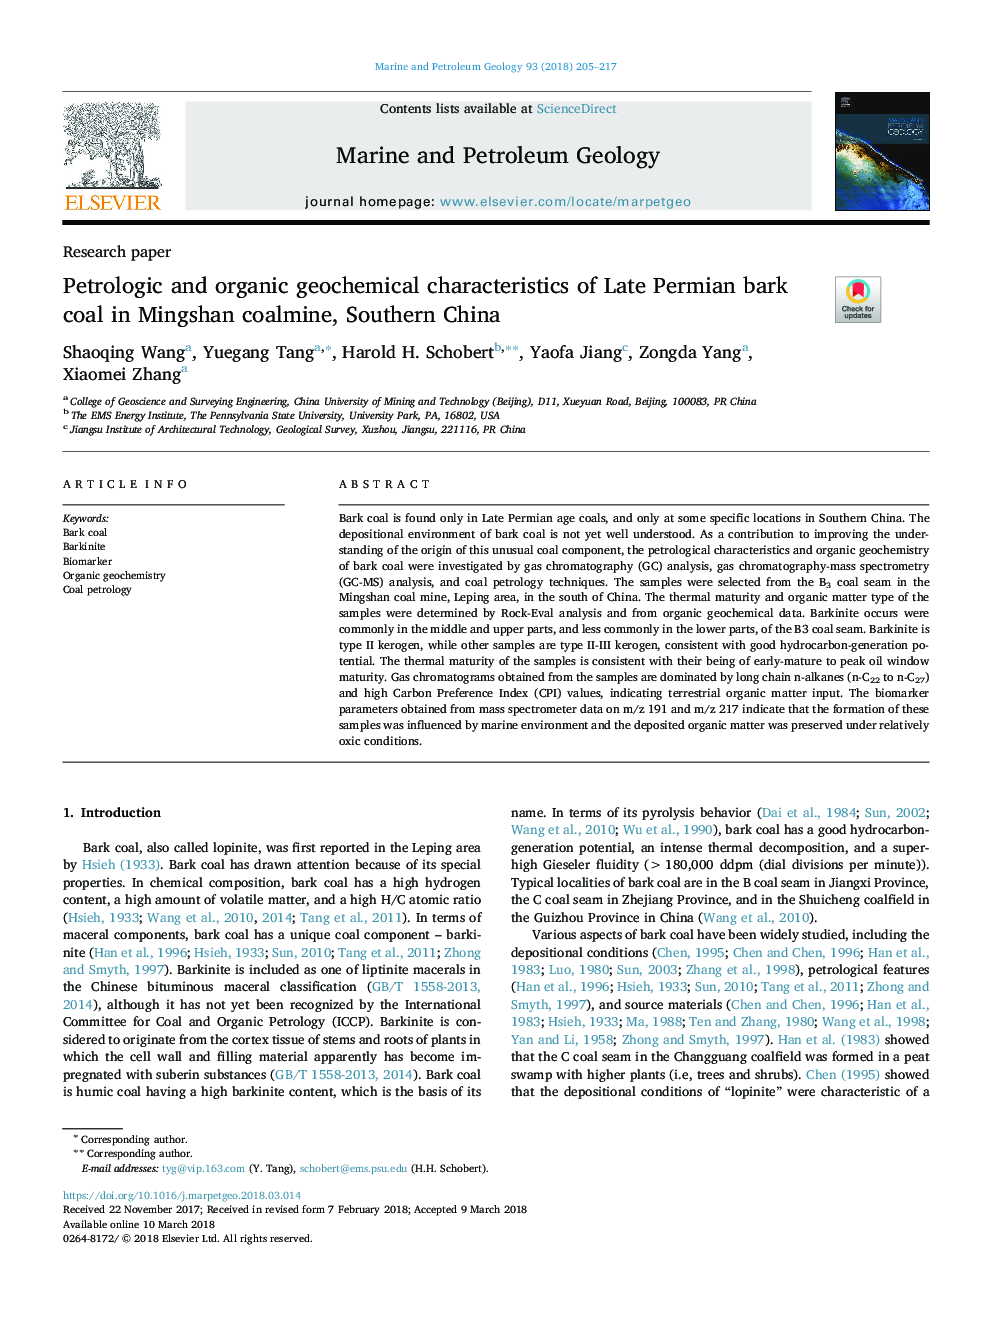 Petrologic and organic geochemical characteristics of Late Permian bark coal in Mingshan coalmine, Southern China